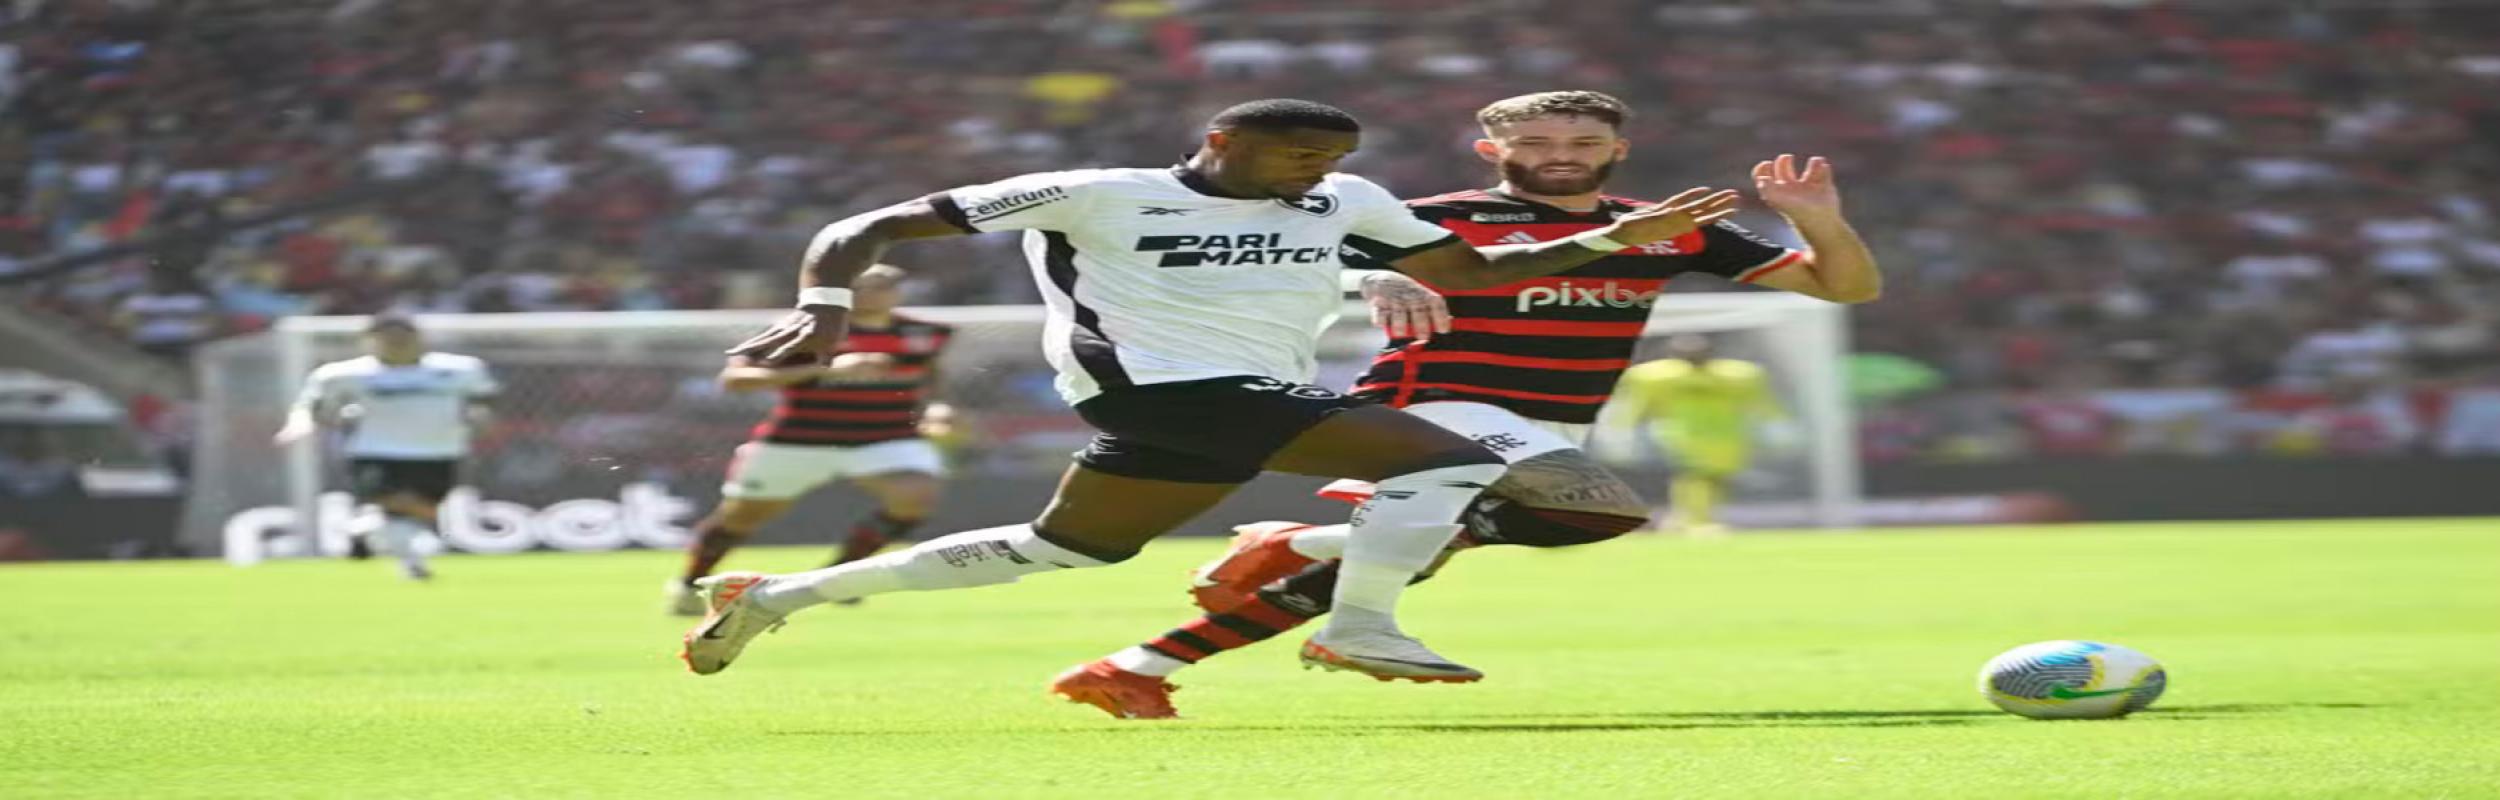 Μποταφόγκο, Botafogo  